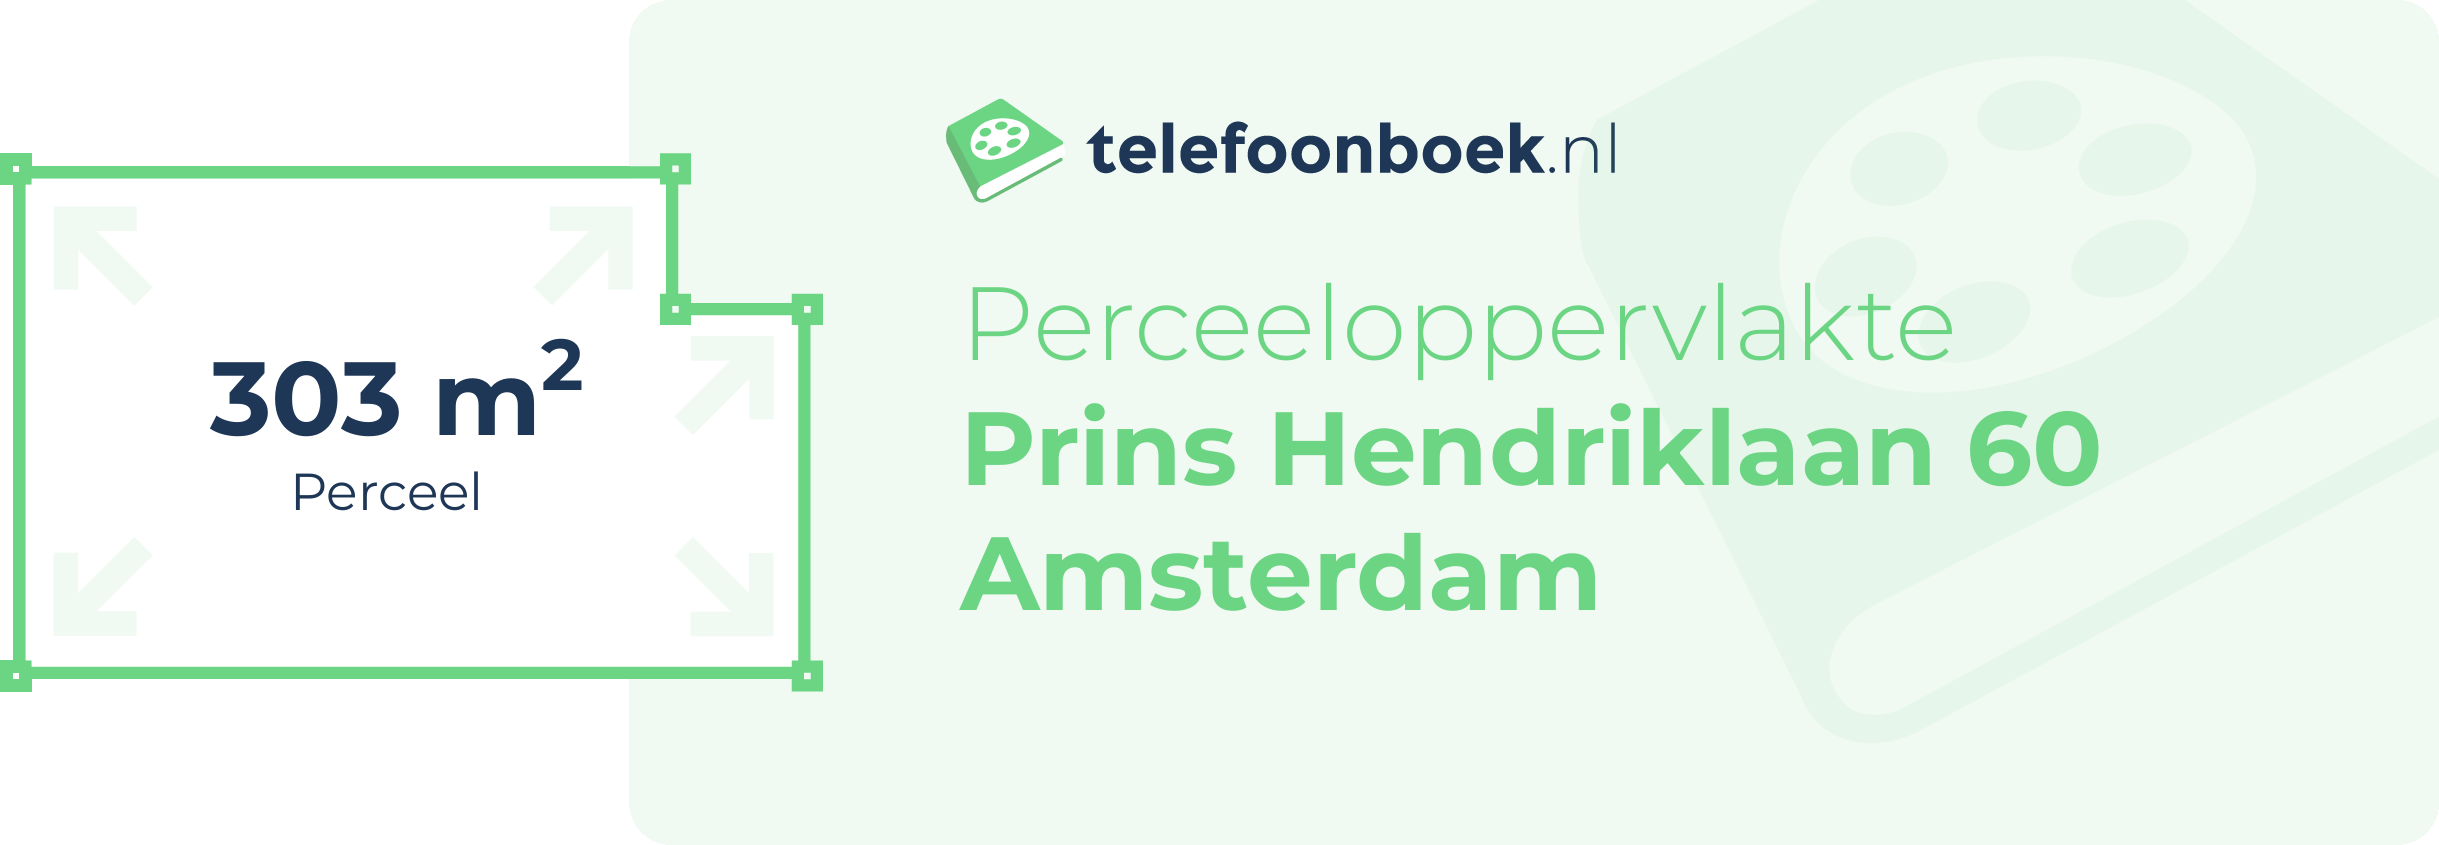 Perceeloppervlakte Prins Hendriklaan 60 Amsterdam